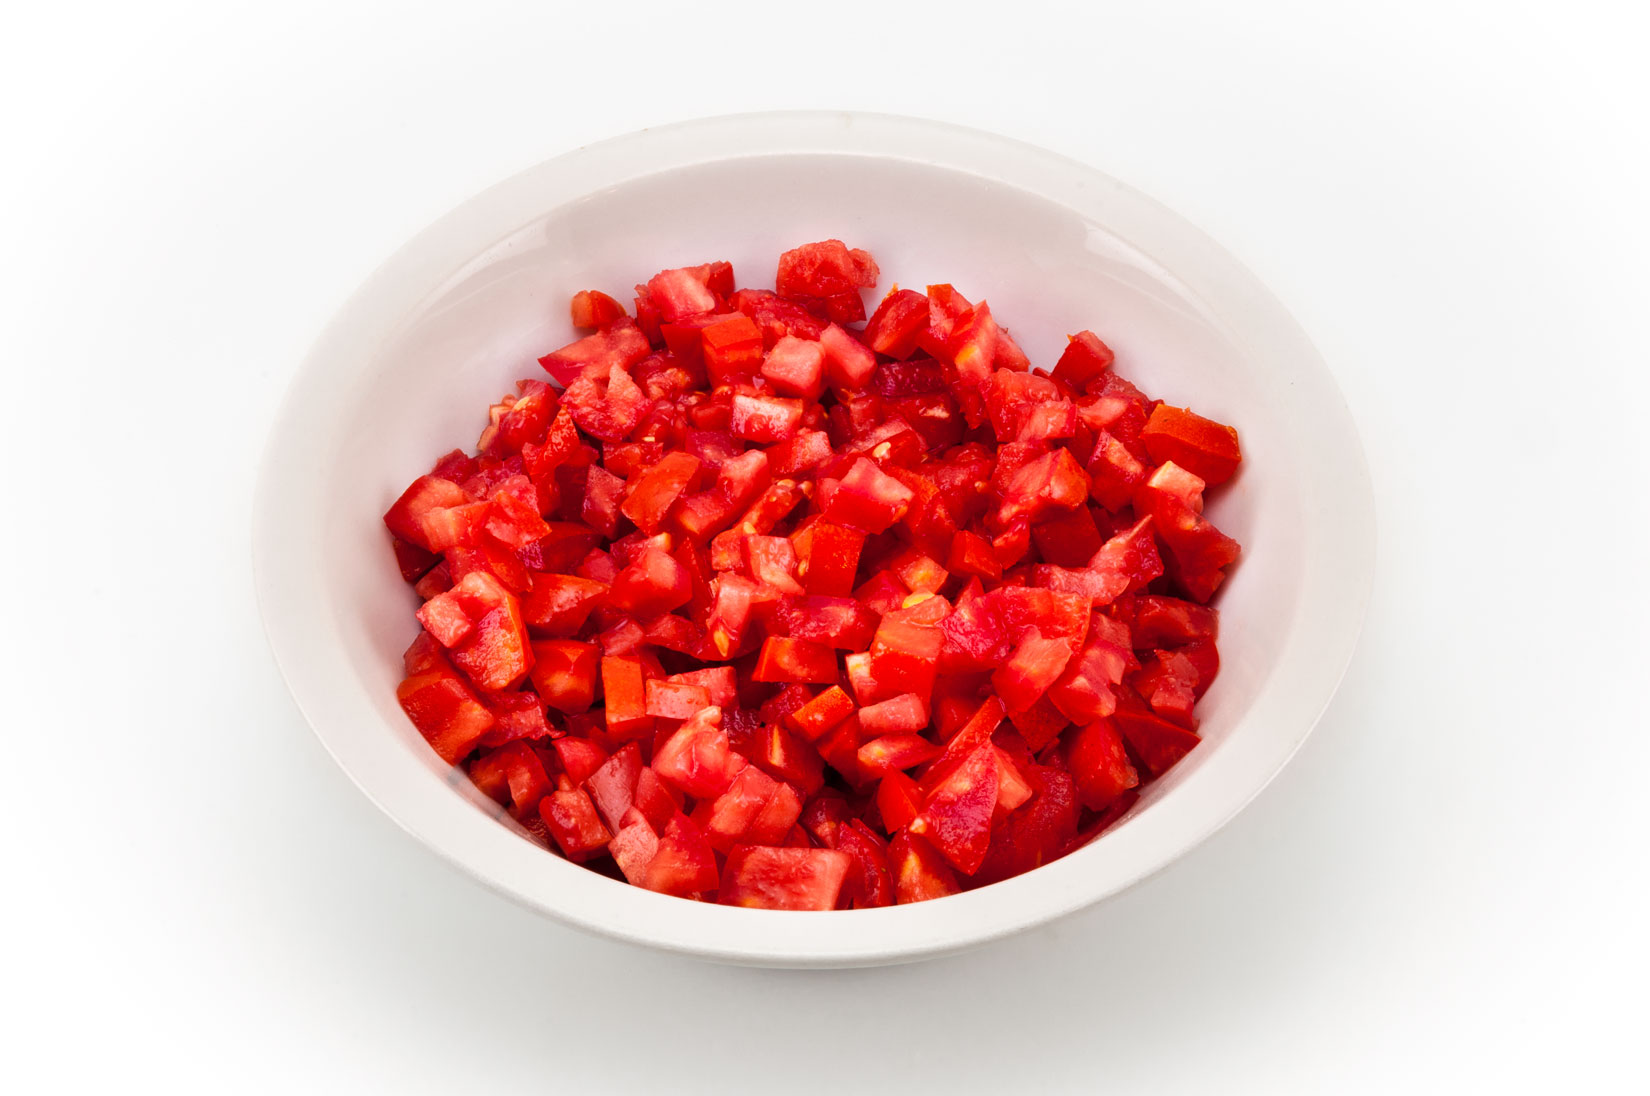 Z rajčat odstraníme životodárné tekutiny i se semínky a nakostečkujeme je